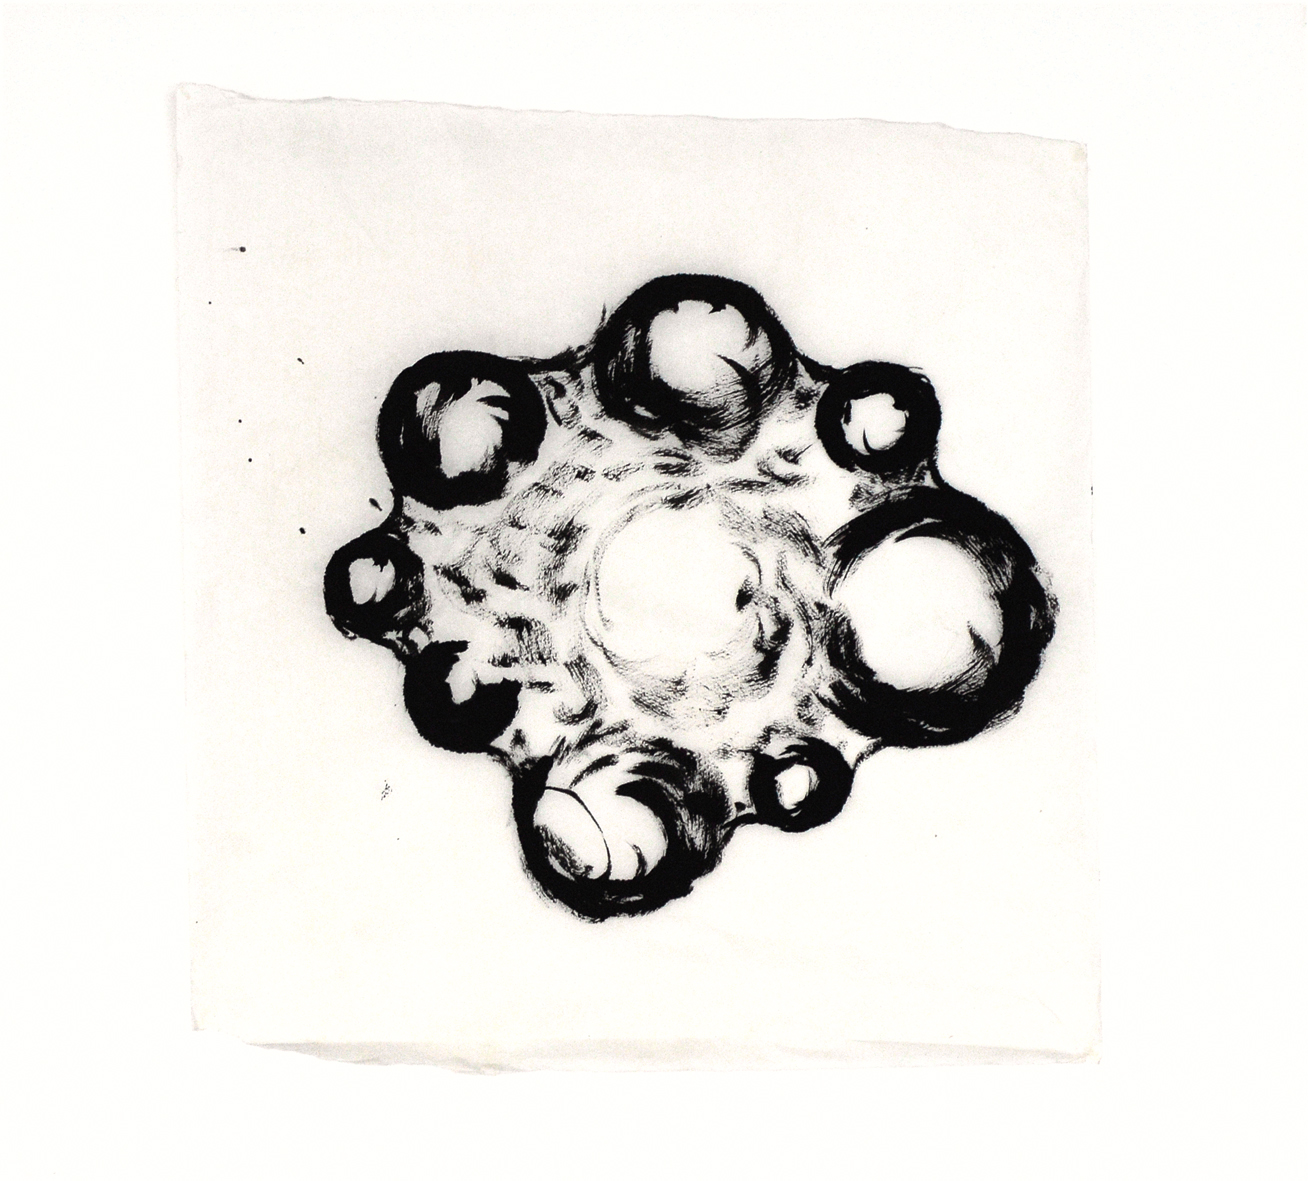 Eine schwarz-weiß Zeichnung des Künstlers Martin Schneider, die aussieht wie mehrere Blasen, die sich verbinden.